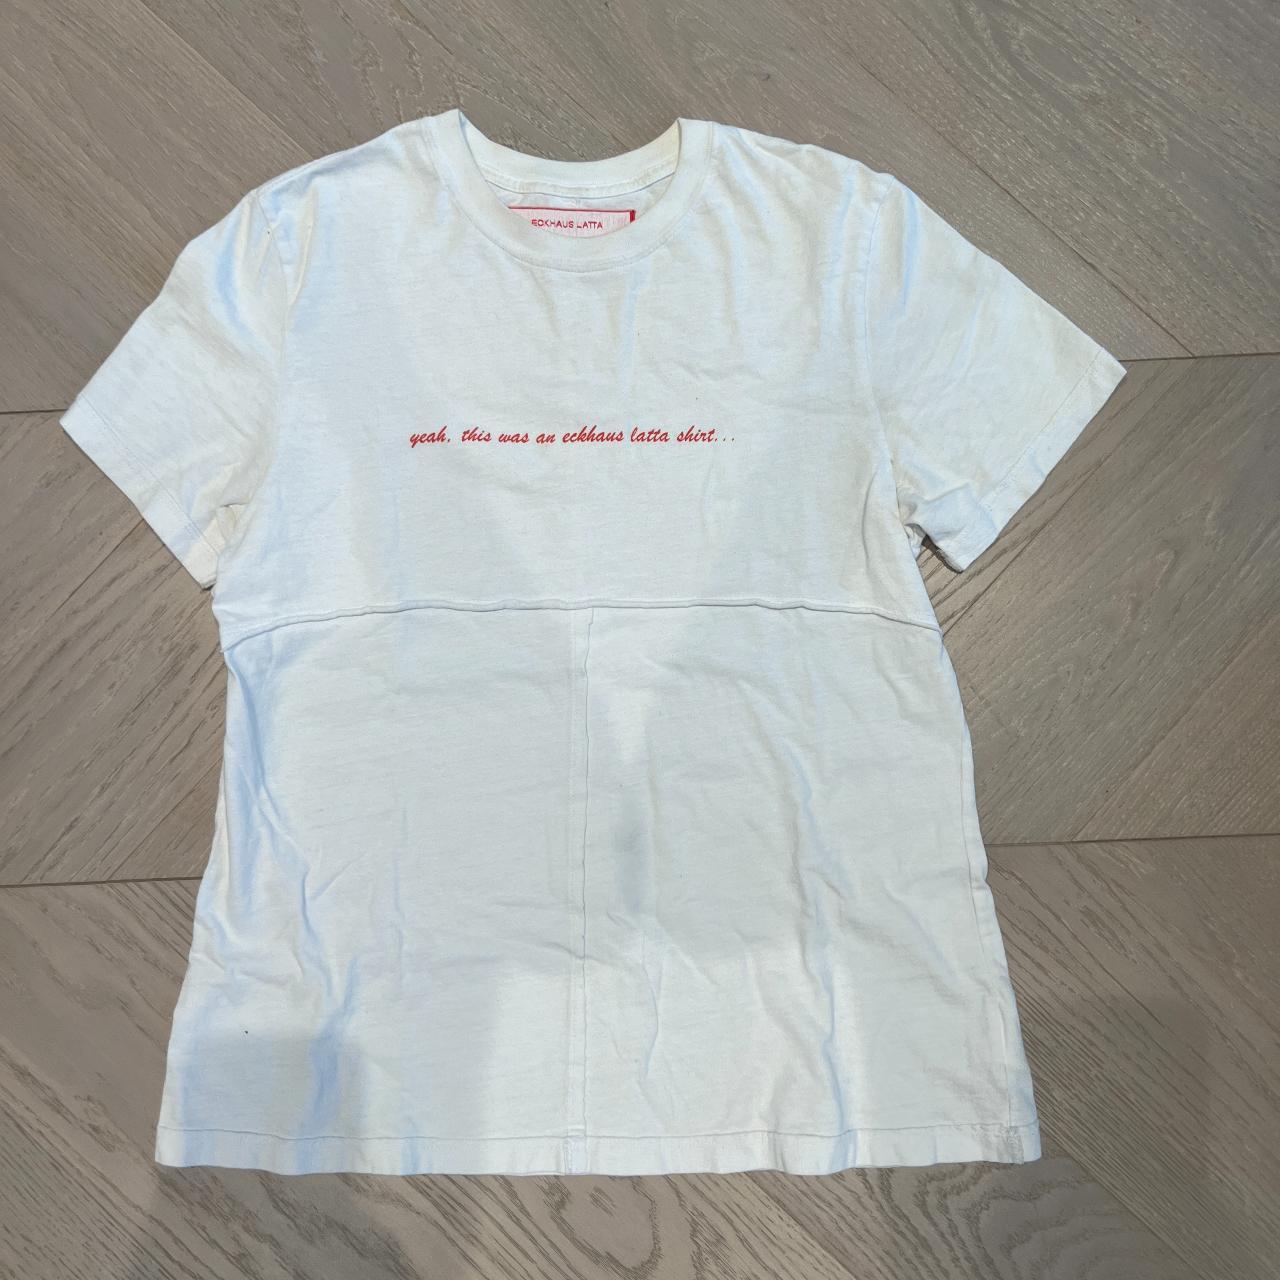 Eckhaus Latta Men's White T-shirt